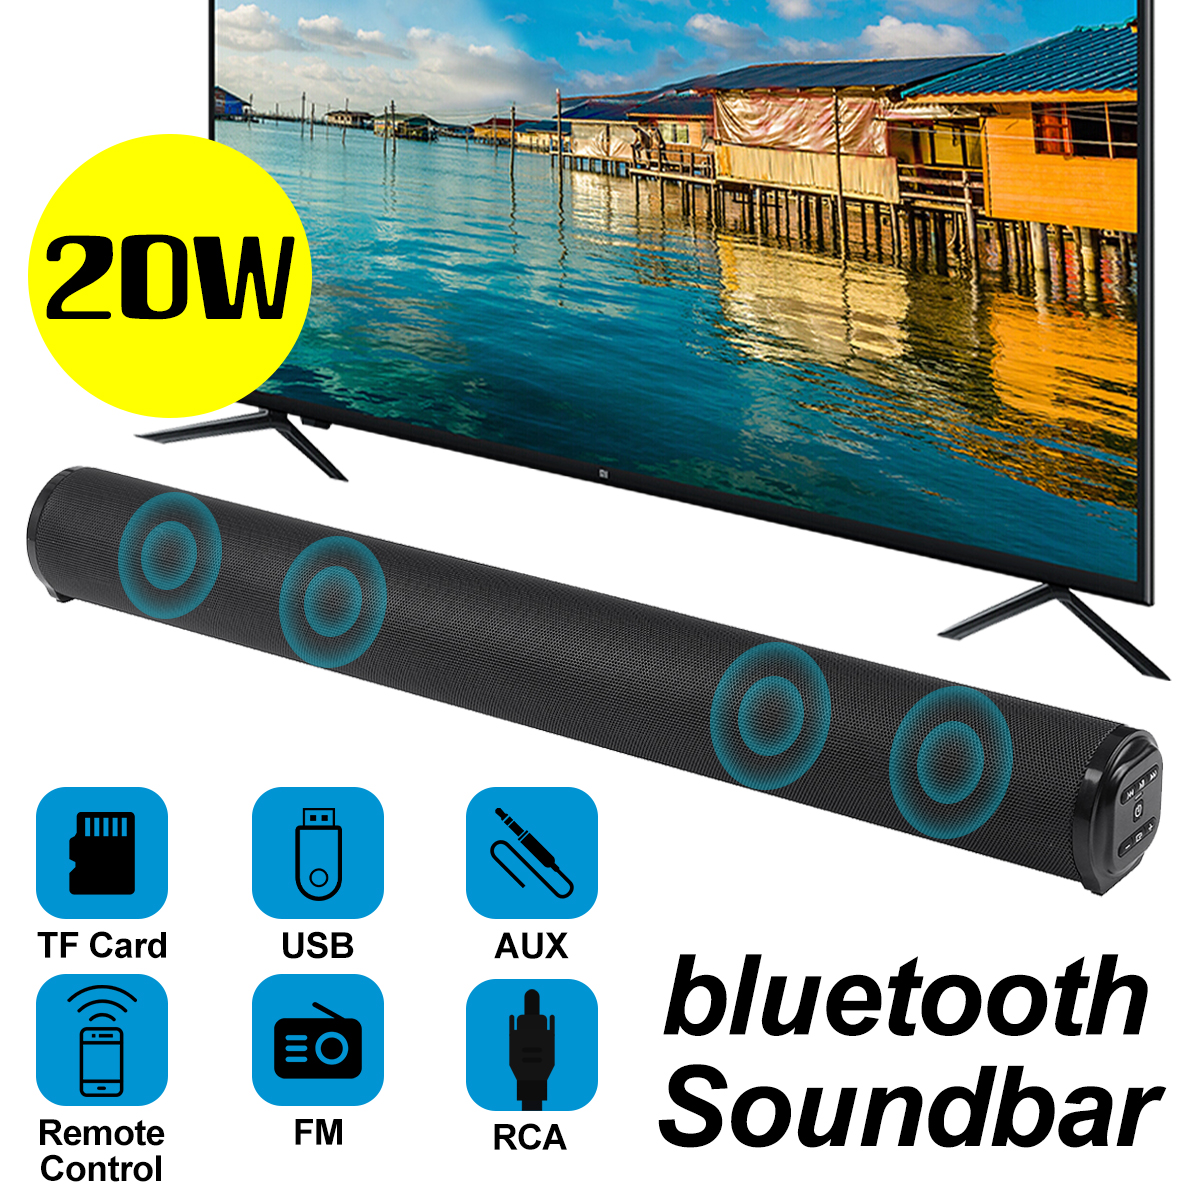 BS-10-bluetooth-50-Soundbar-4x5W-Bass-TV-Speaker-AUX-TF-USB-RCA-Home-TV-Theater-System-Remote-FM-Rad-1821239-1